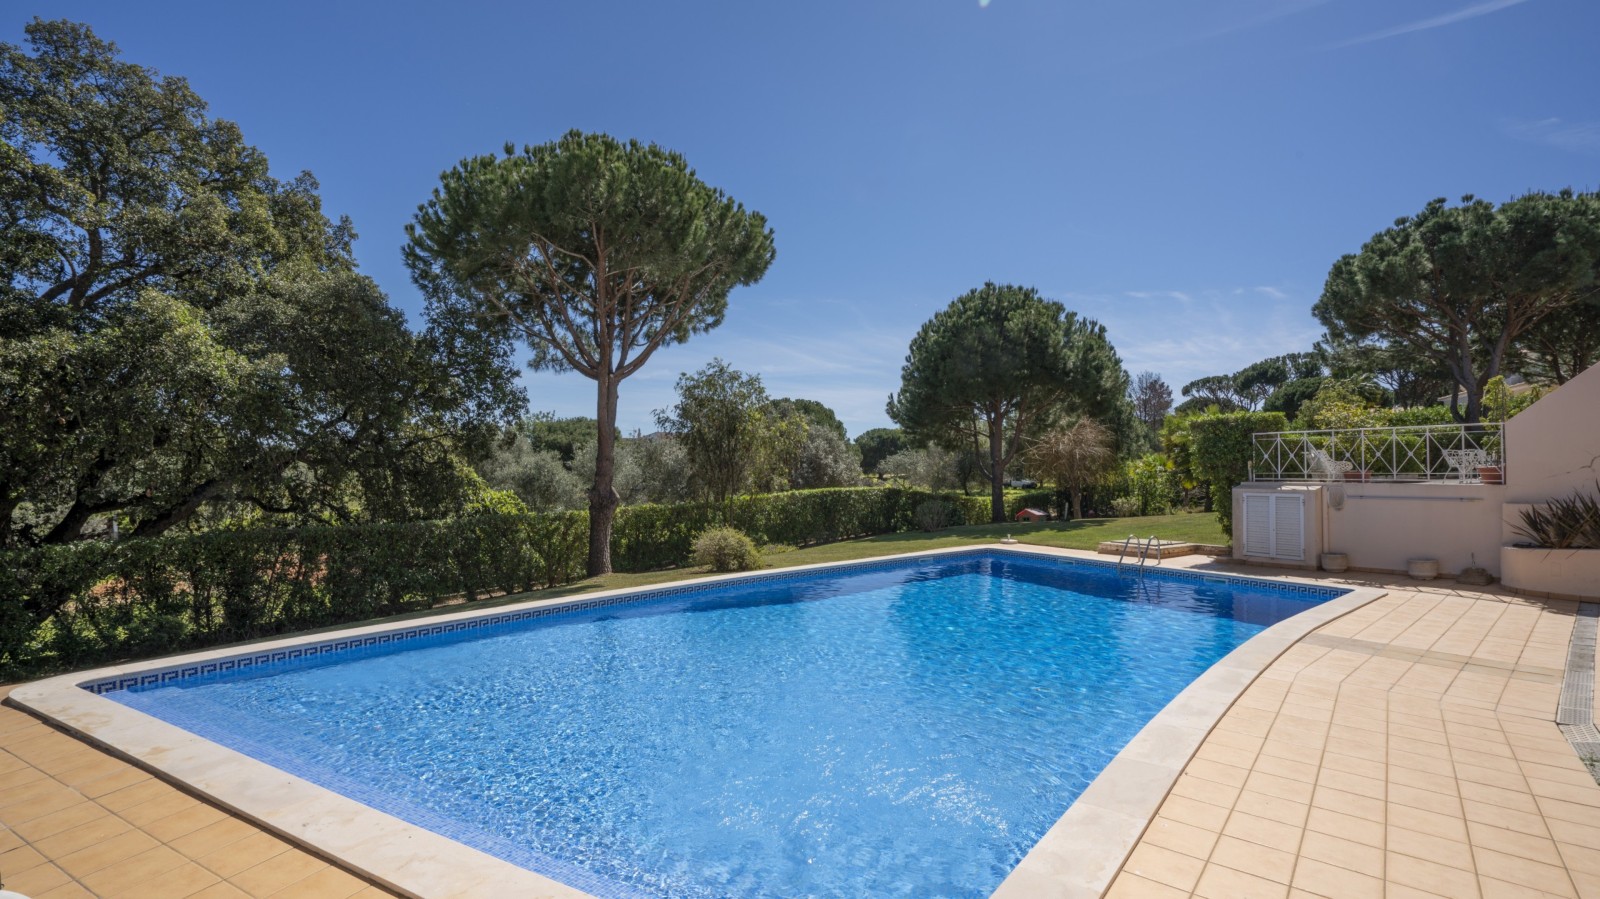 Villa adosada de 4 dormitorios, con piscina, en venta en Vilamoura, Algarve_237471